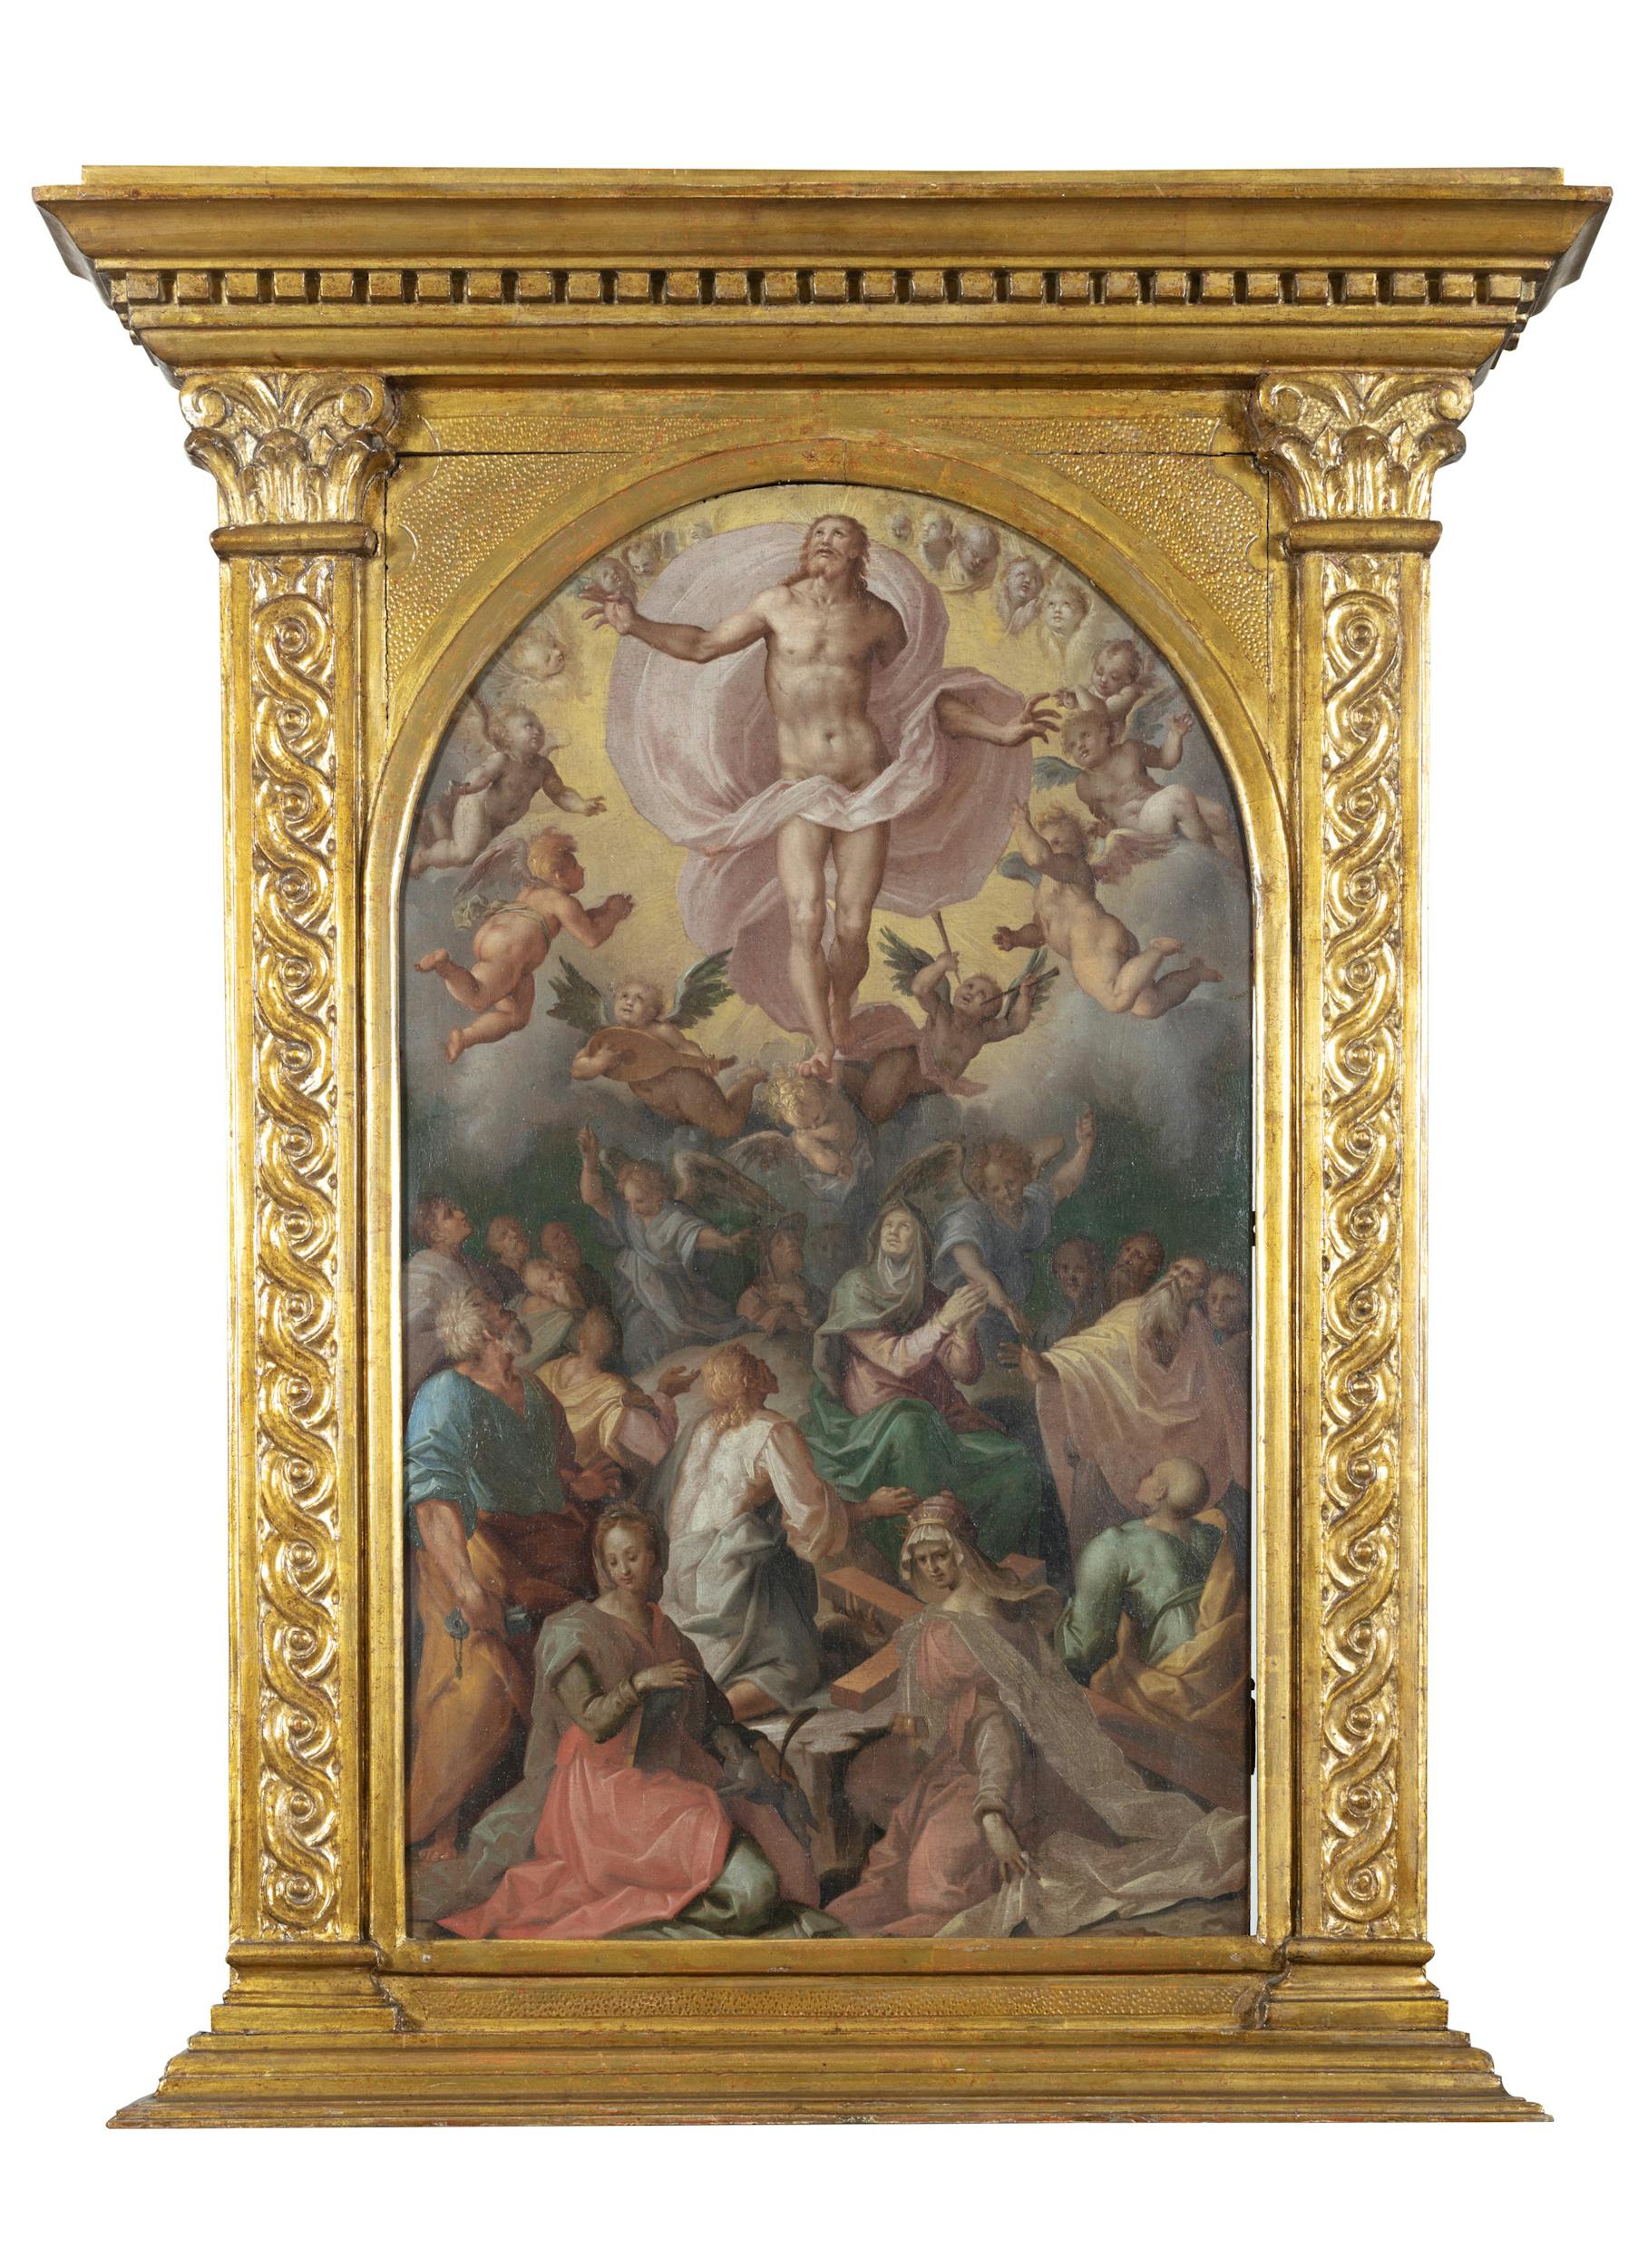 Maso da San Friano (Firenze, 1531-1571)  Ascensione di Cristo con la Vergine, gli Apostoli e le Sante Agnese ed Elena  cm 62,3 x 36,5  tempera su tavola  1565